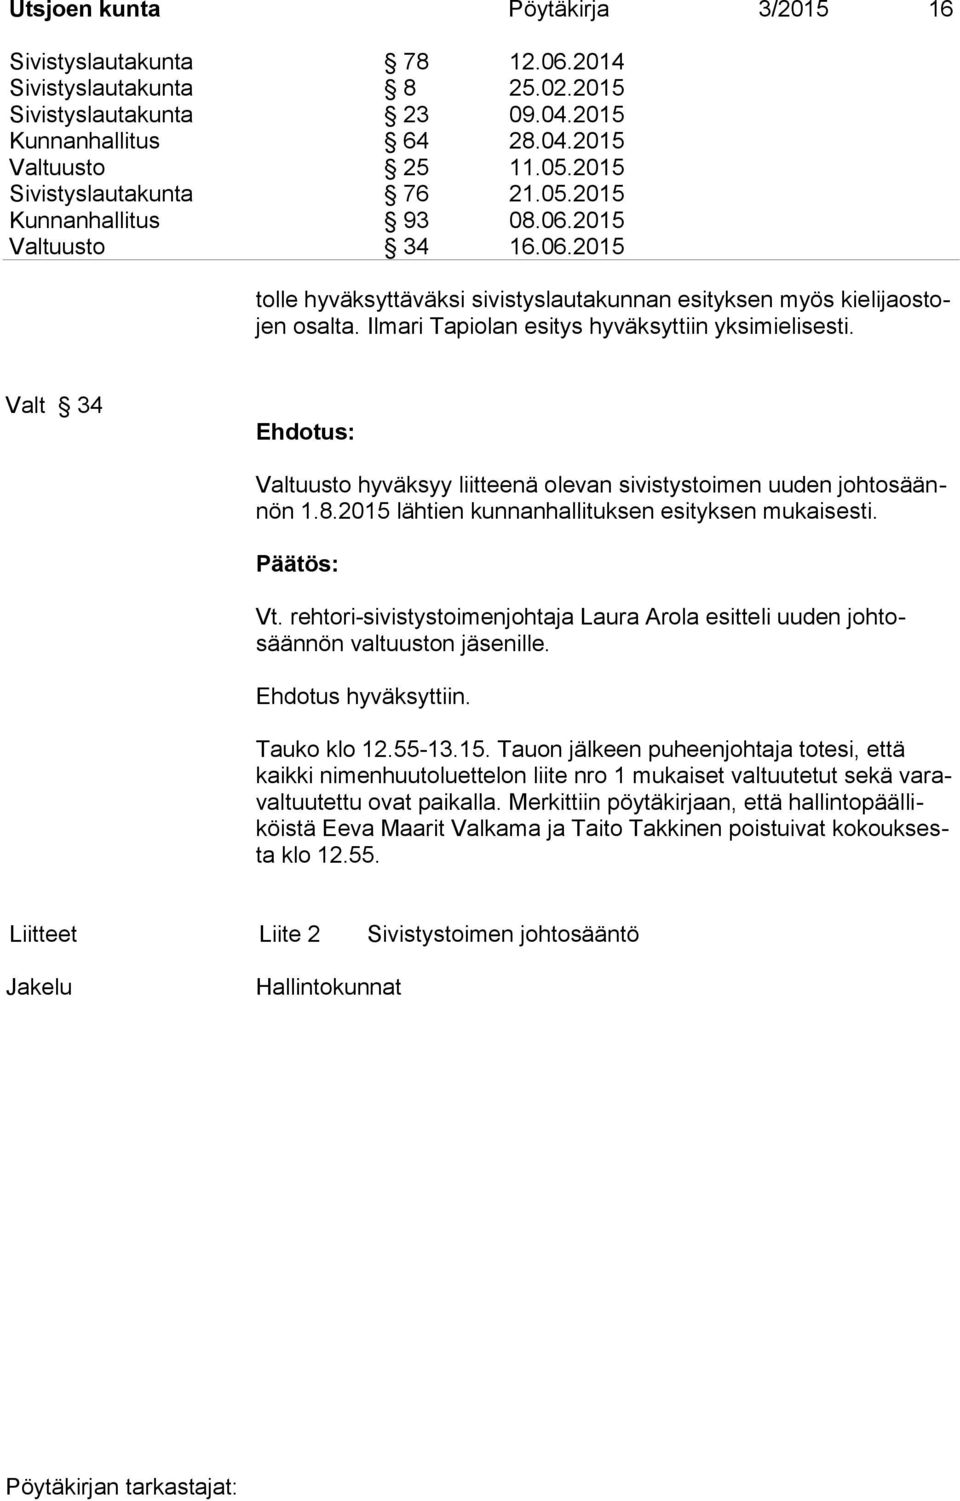 Ilmari Tapiolan esitys hyväksyttiin yksimielisesti. Valt 34 Valtuusto hyväksyy liitteenä olevan sivistystoimen uuden johtosäännön 1.8.2015 lähtien kunnanhallituksen esityksen mukaisesti. Vt.